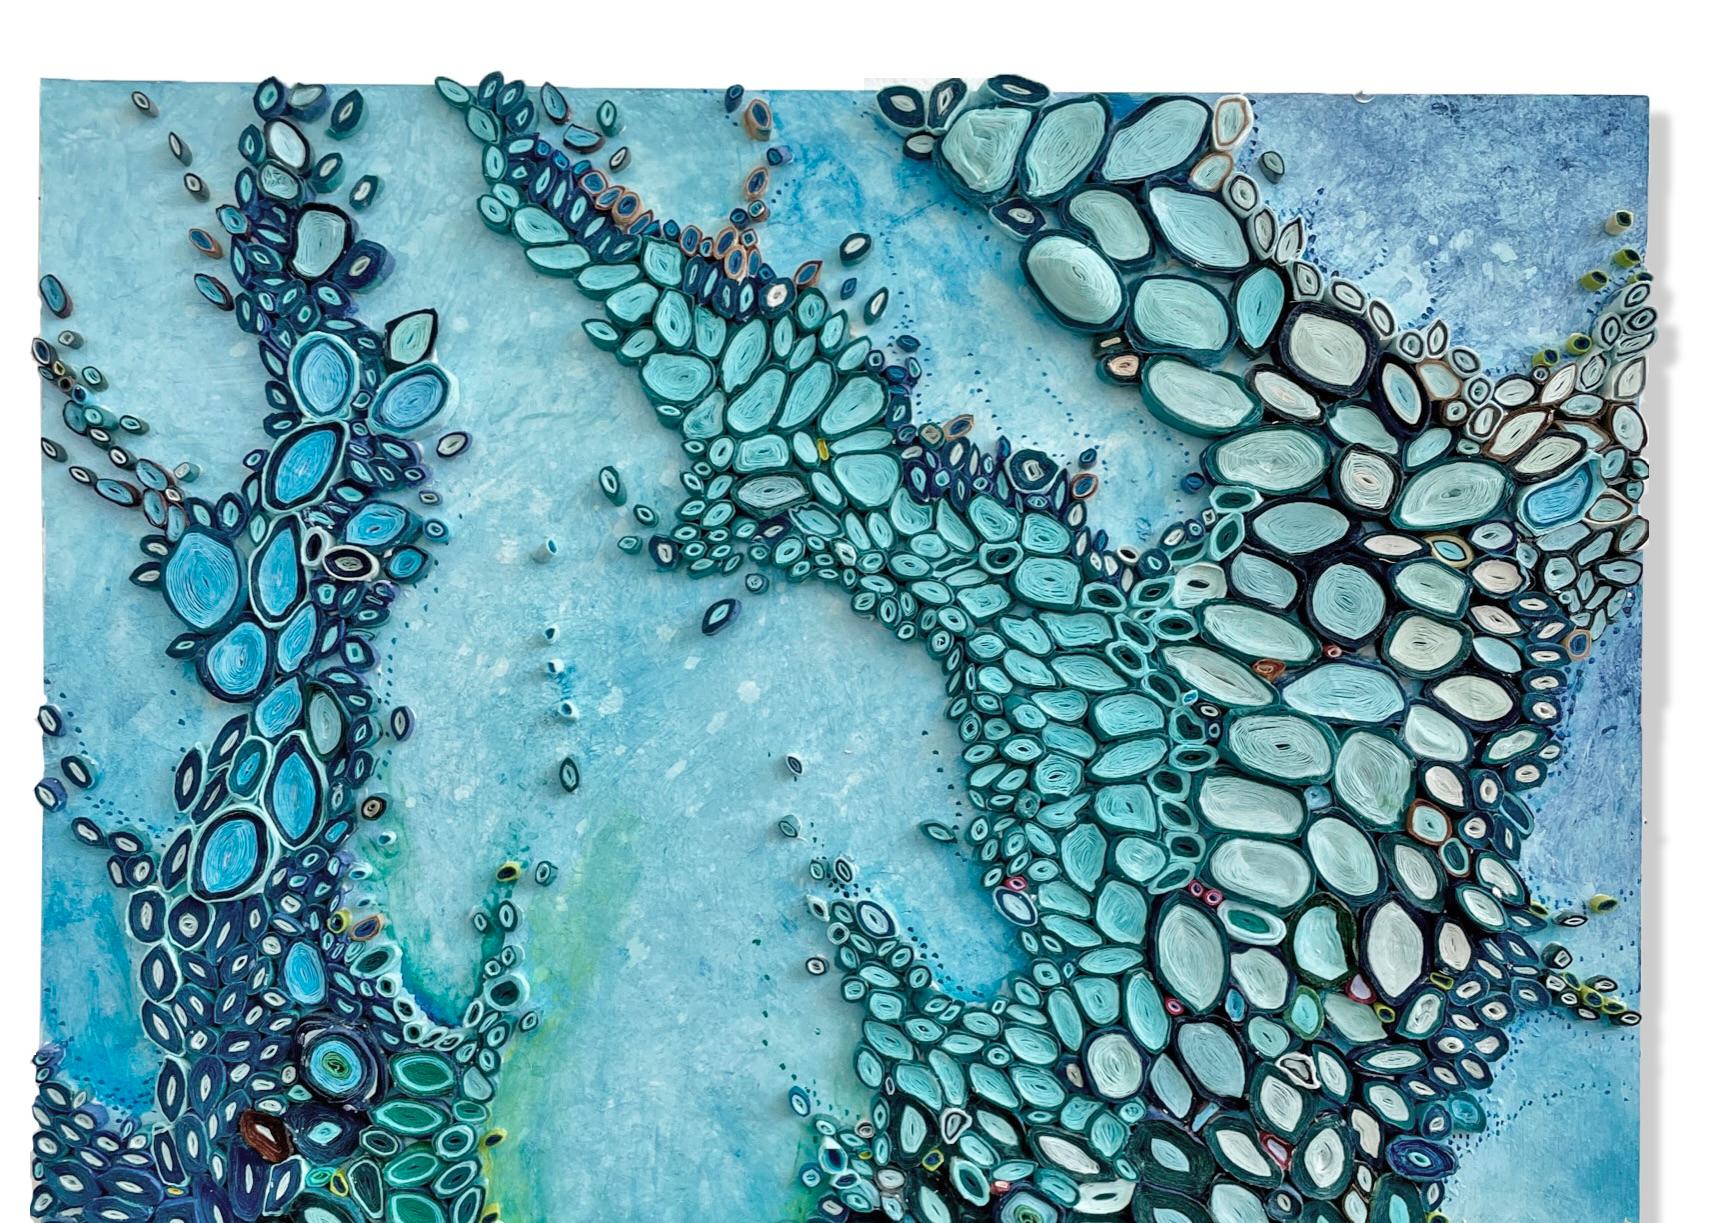 L'artiste multimédia Amy Genser réalise des collages en papier. Ces pièces murales colorées et texturées, uniques en leur genre, incarnent le mouvement et les processus. Elle manipule magistralement le papier - chaque pièce étant coupée, roulée et